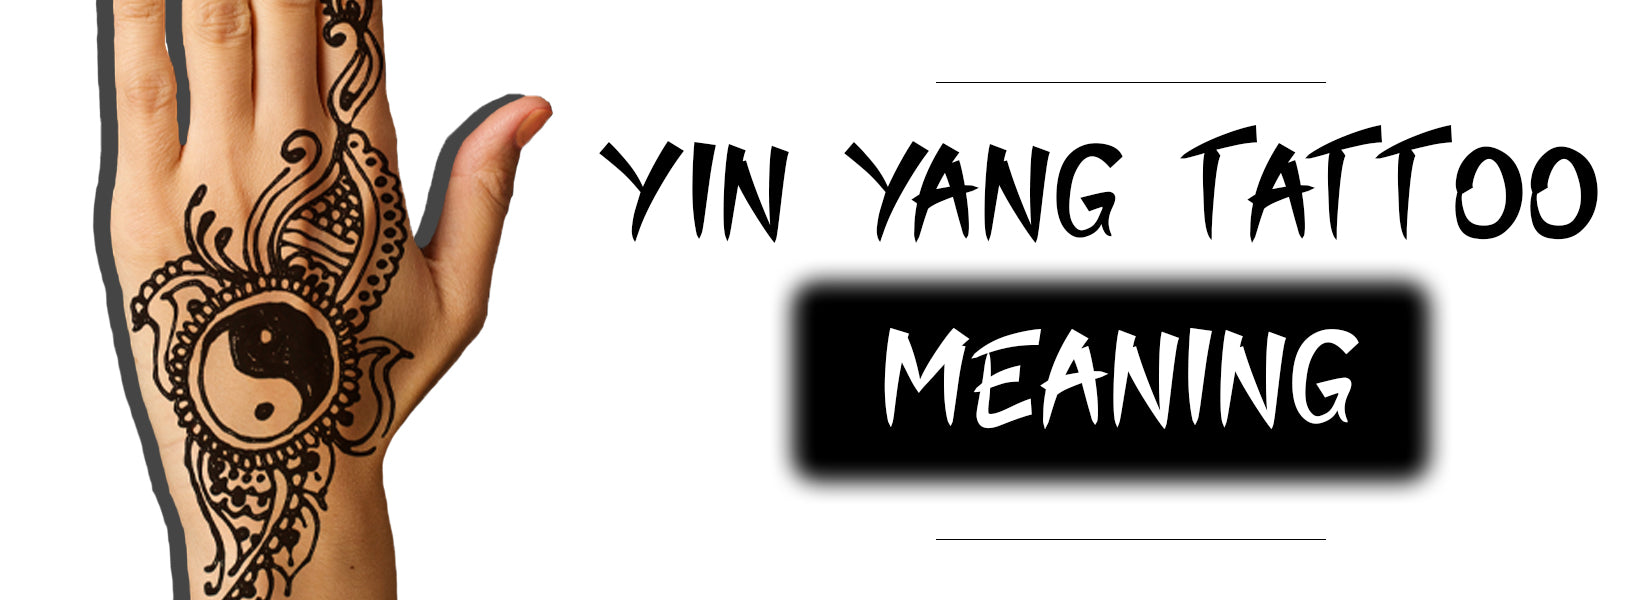 Yin Yang Tattoo Meaning